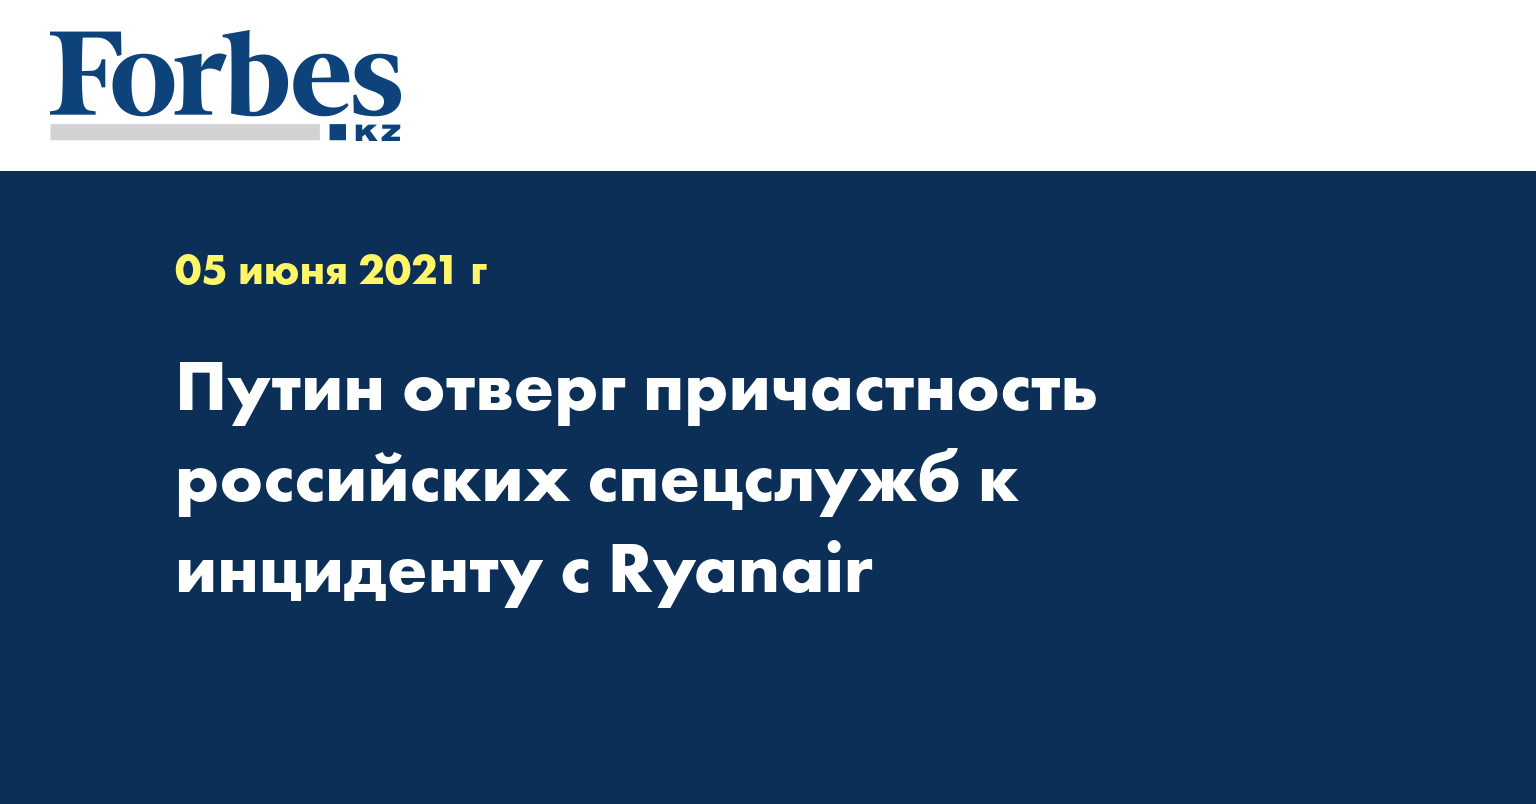 Путин отверг причастность российских спецслужб к инциденту с Ryanair